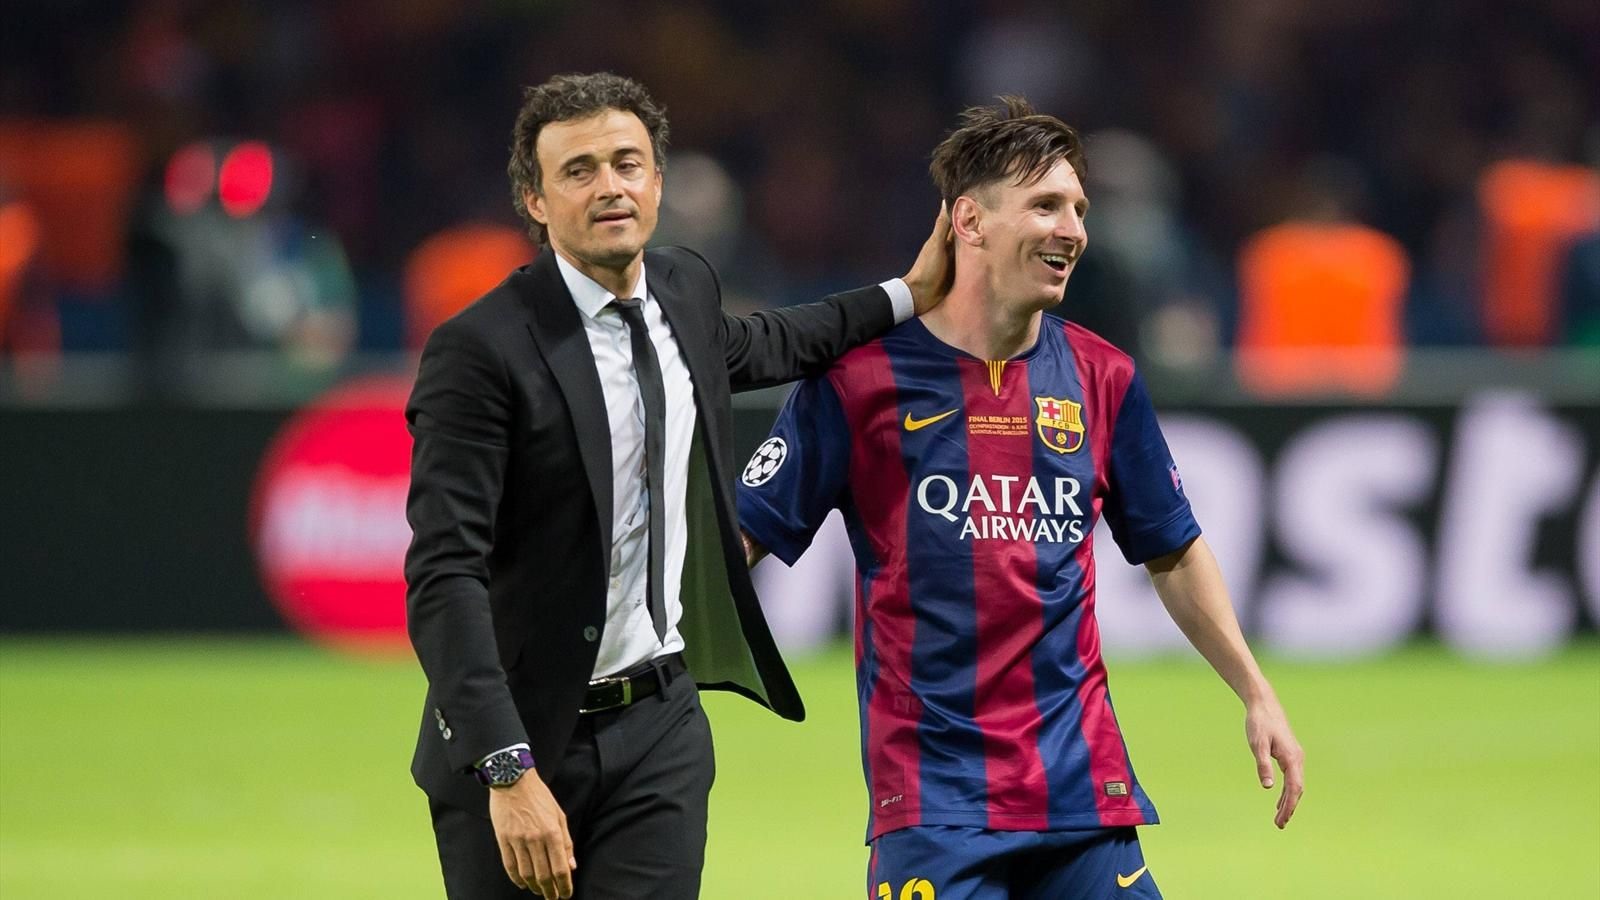 HLV Luis Enrique đánh giá rất cao tài năng của Messi